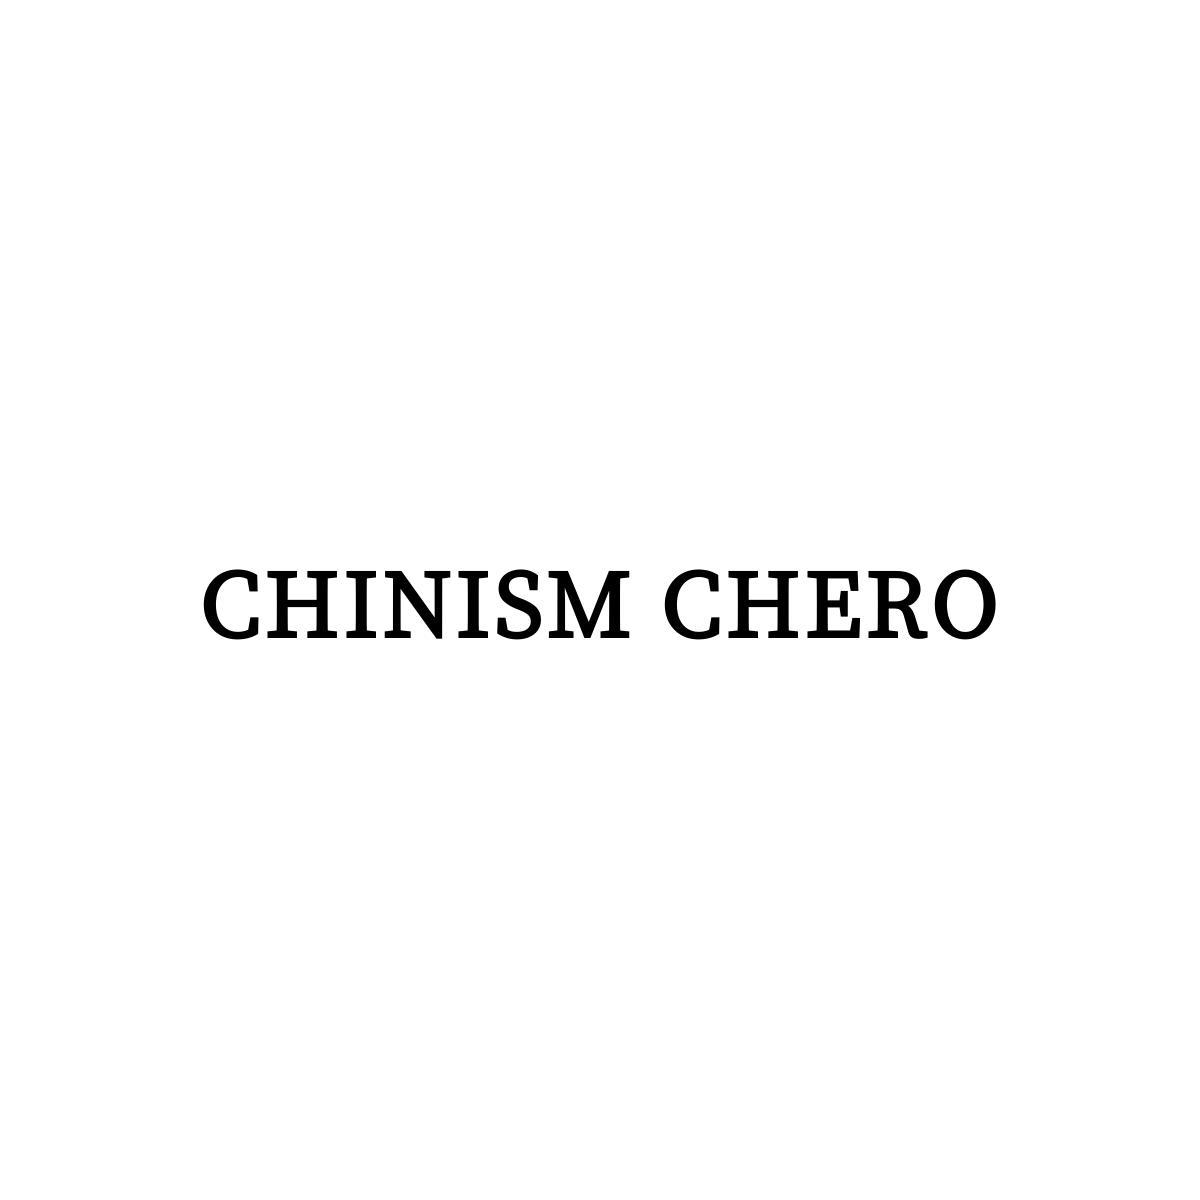 CHINISM CHERO